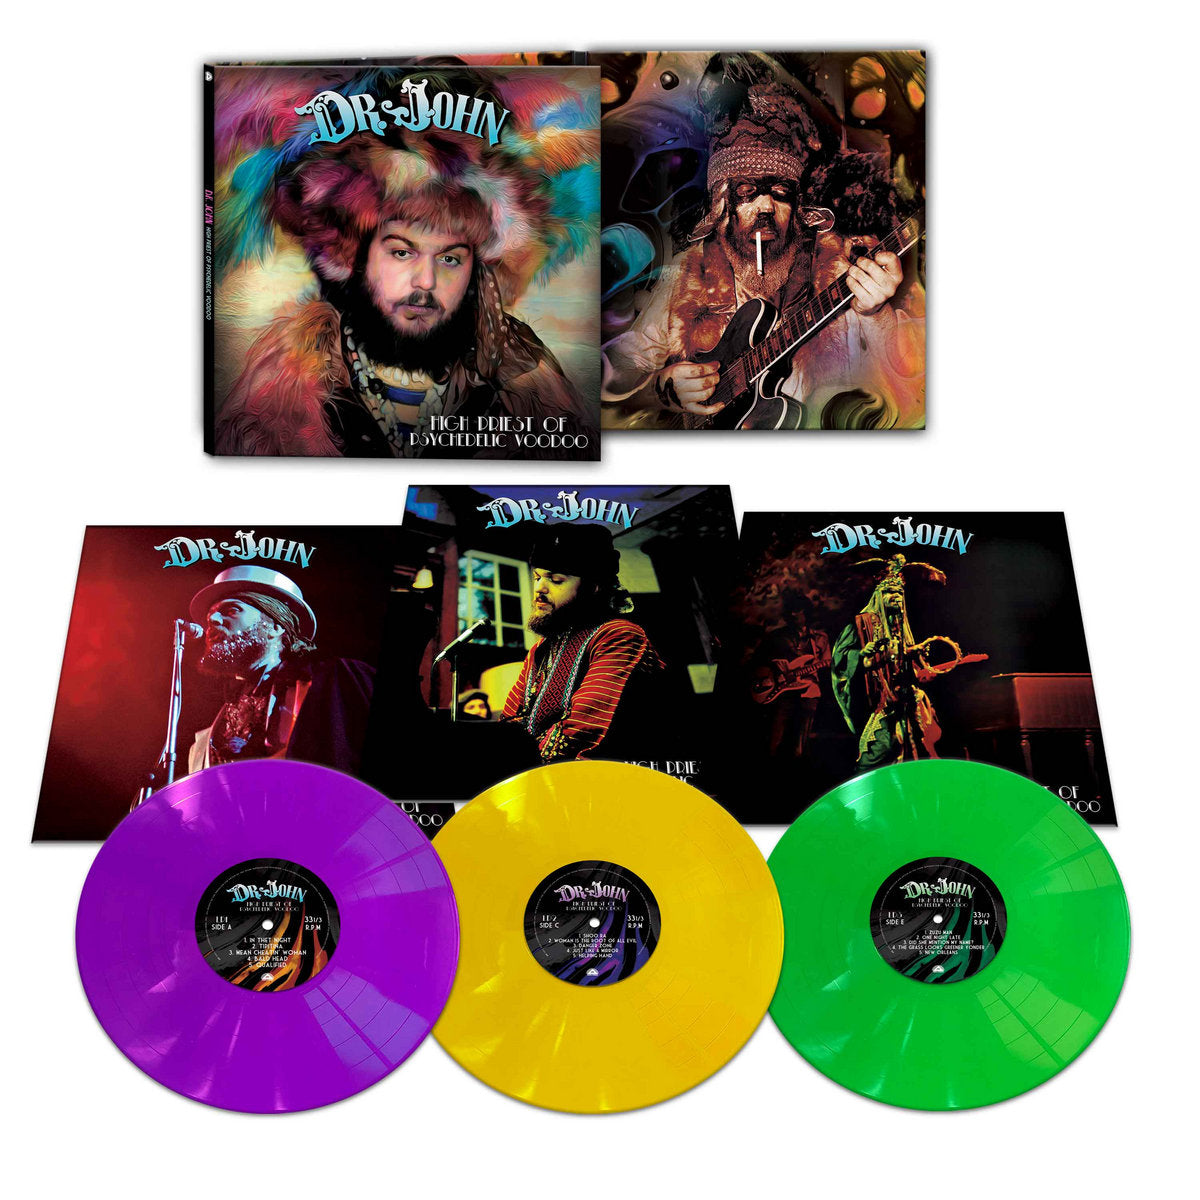 Dr. John - High Priest Of Psychedelic Voodoo [3LP] (Purple, Yellow & Green Vinyl)